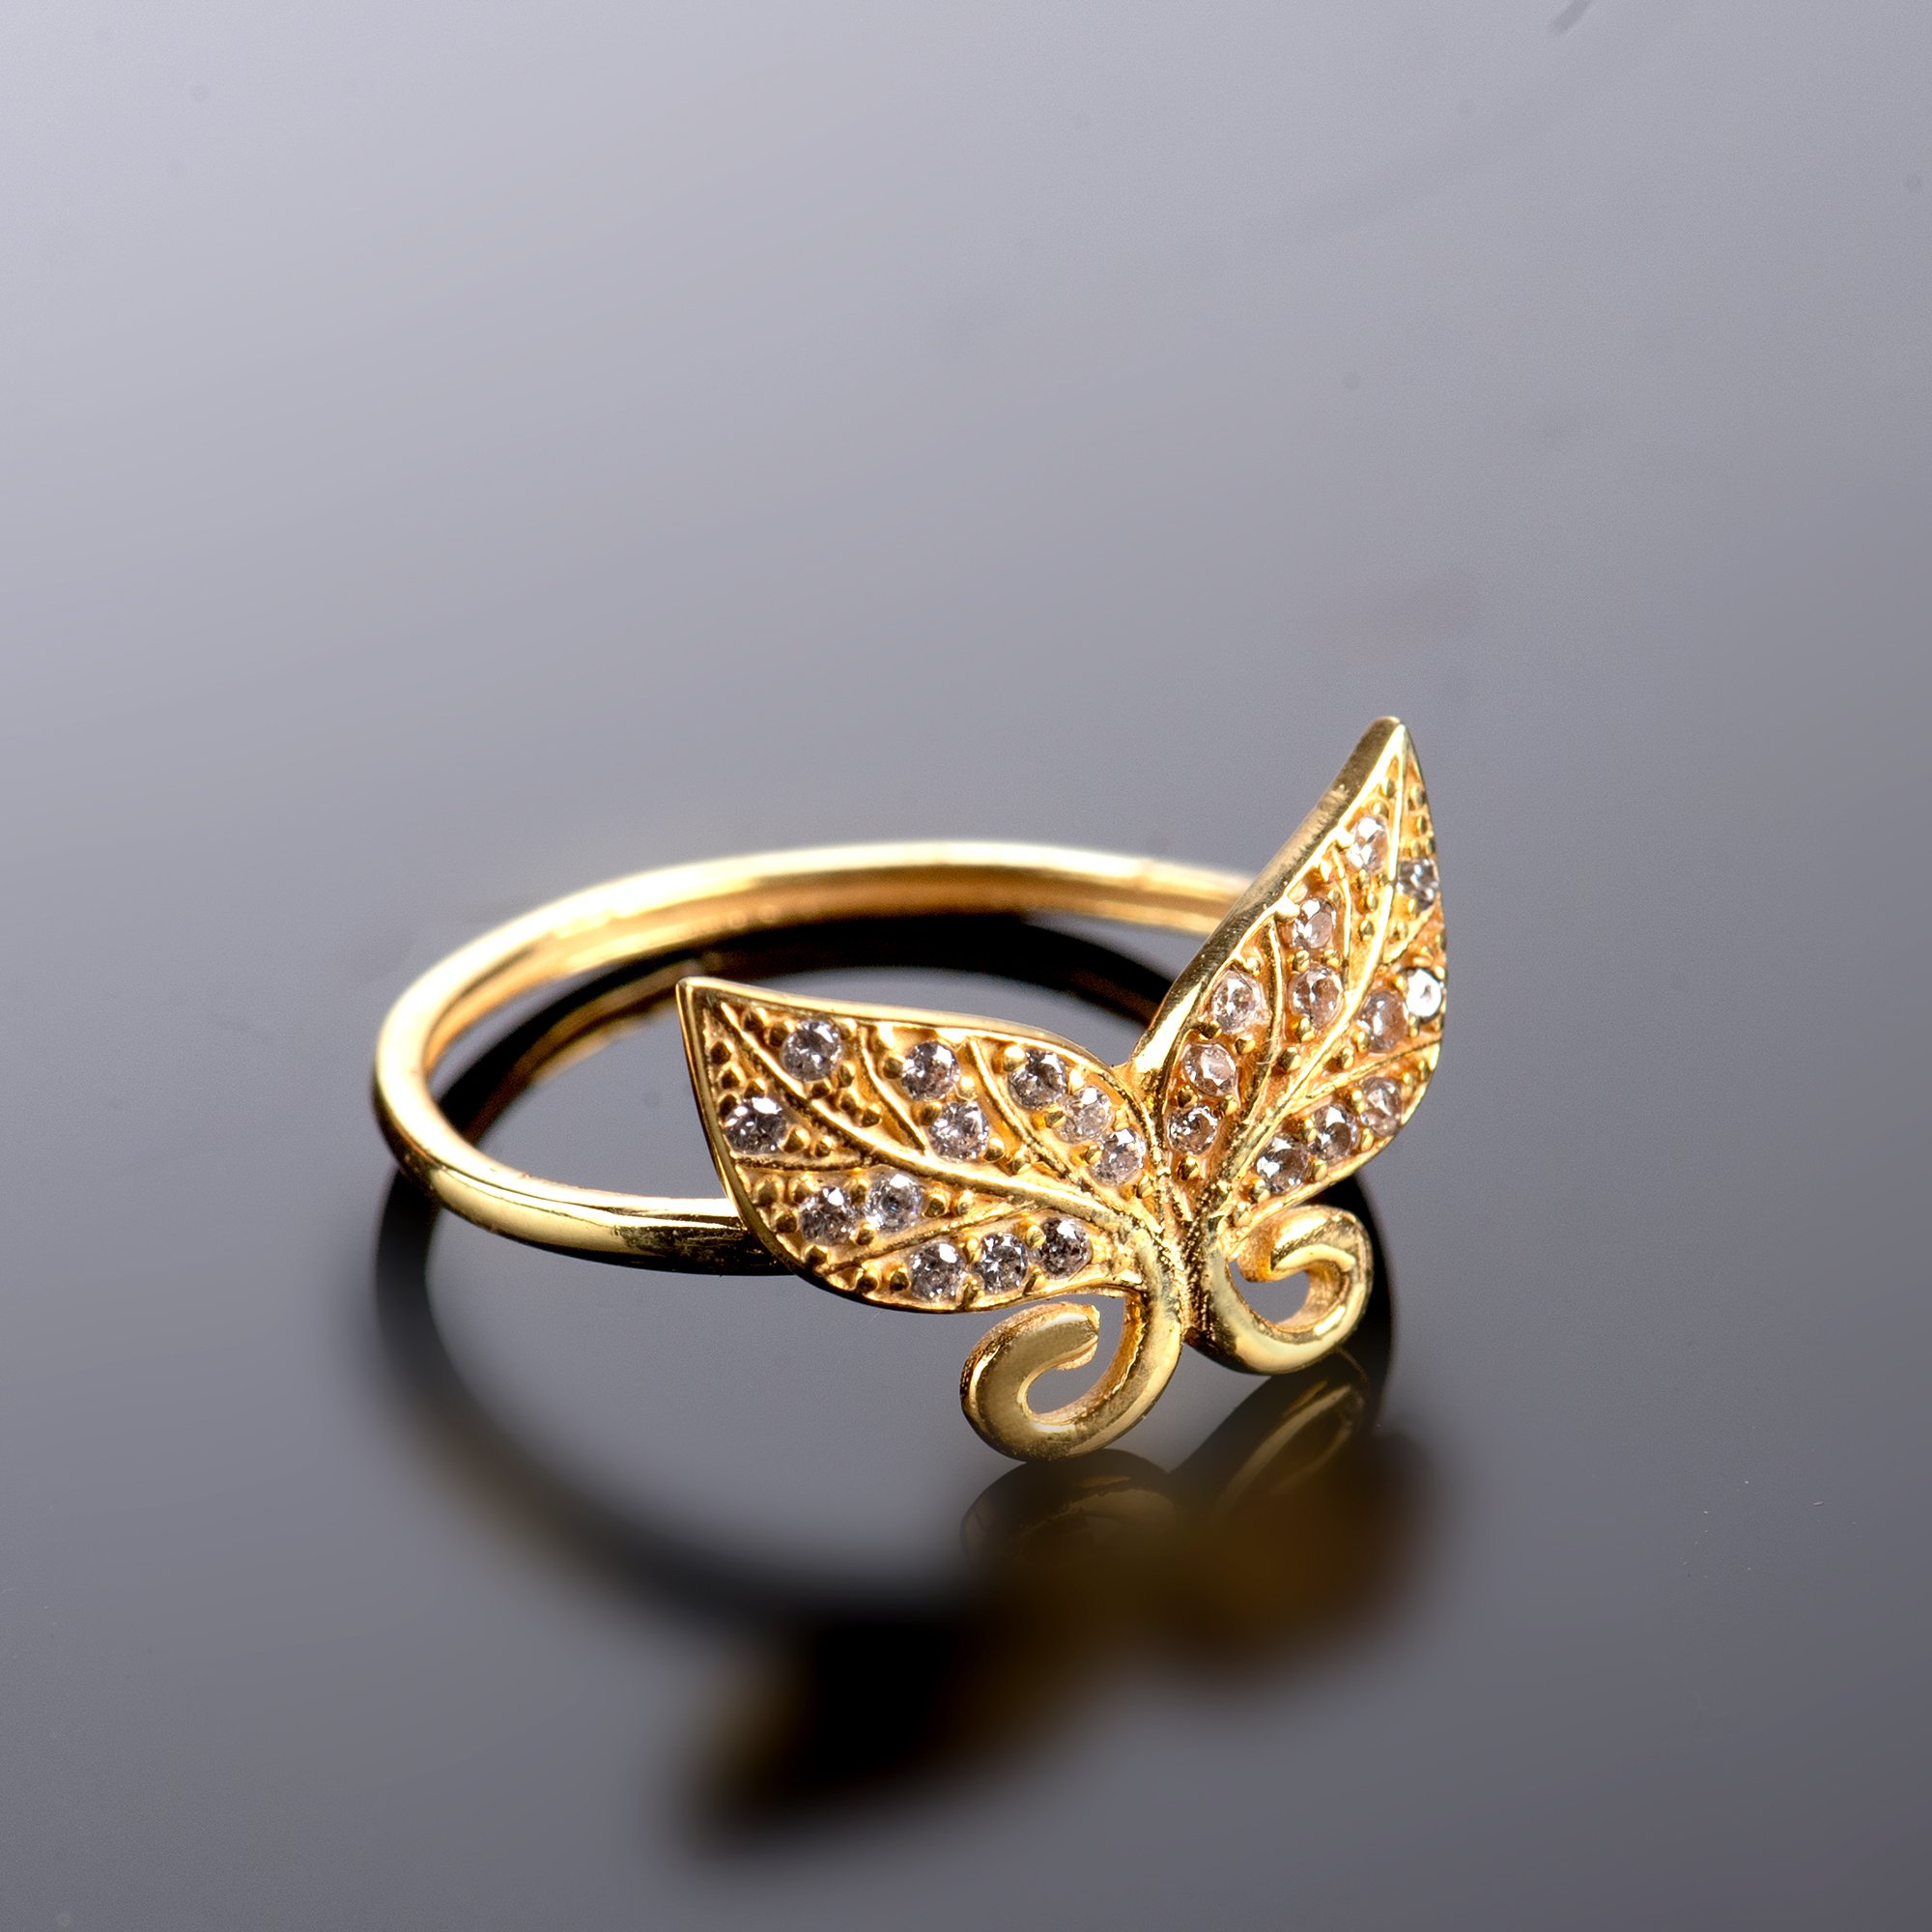 Kelebek Etkisi: 925 Ayar Kadın Gümüş Yüzük İle Stilinizi Dönüştürün